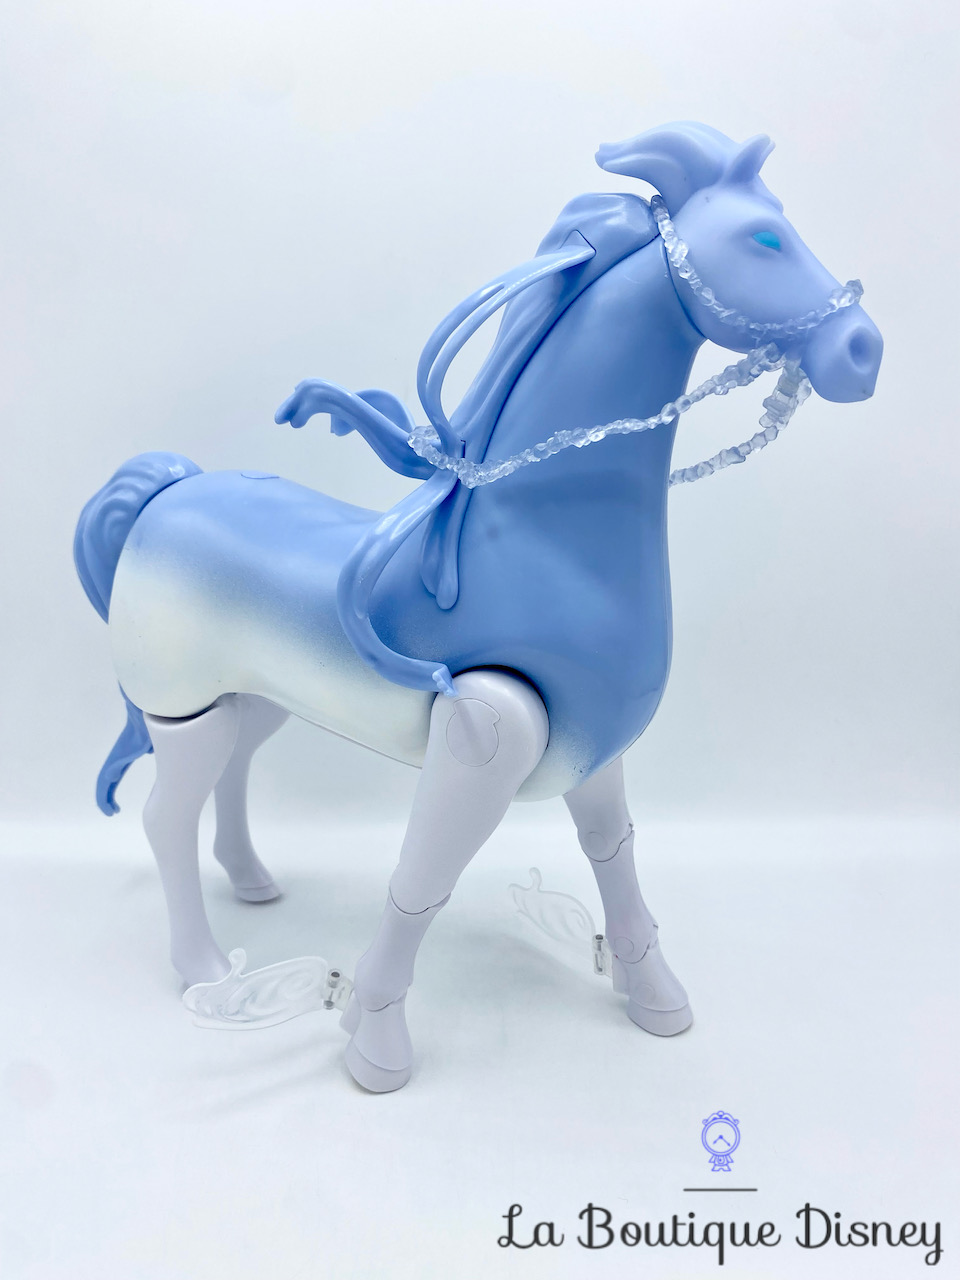 poupée-elsa-nokk-la-reine-des-neiges-2-disney-hasbro-2020-cheval-bleu-blanc-princesse-7